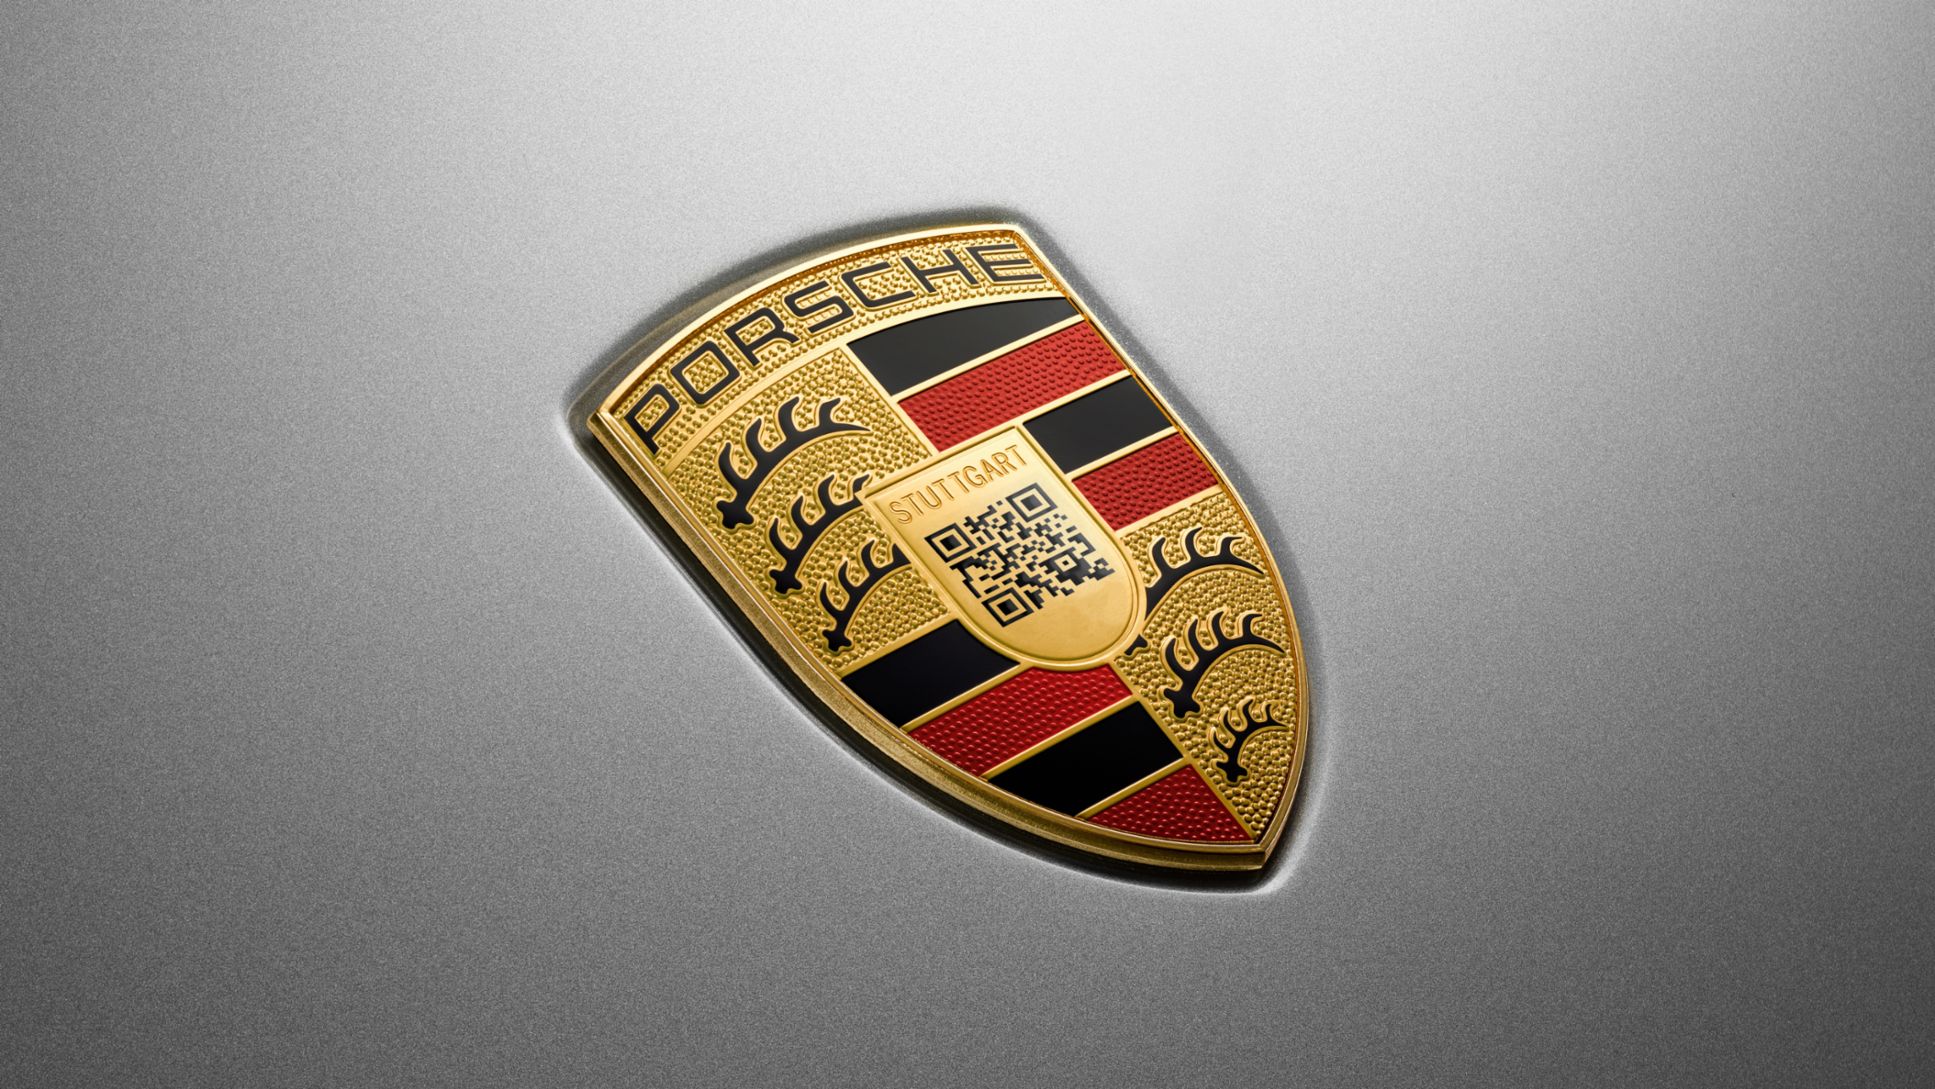 Porsche QREST, 2019, Porsche AG